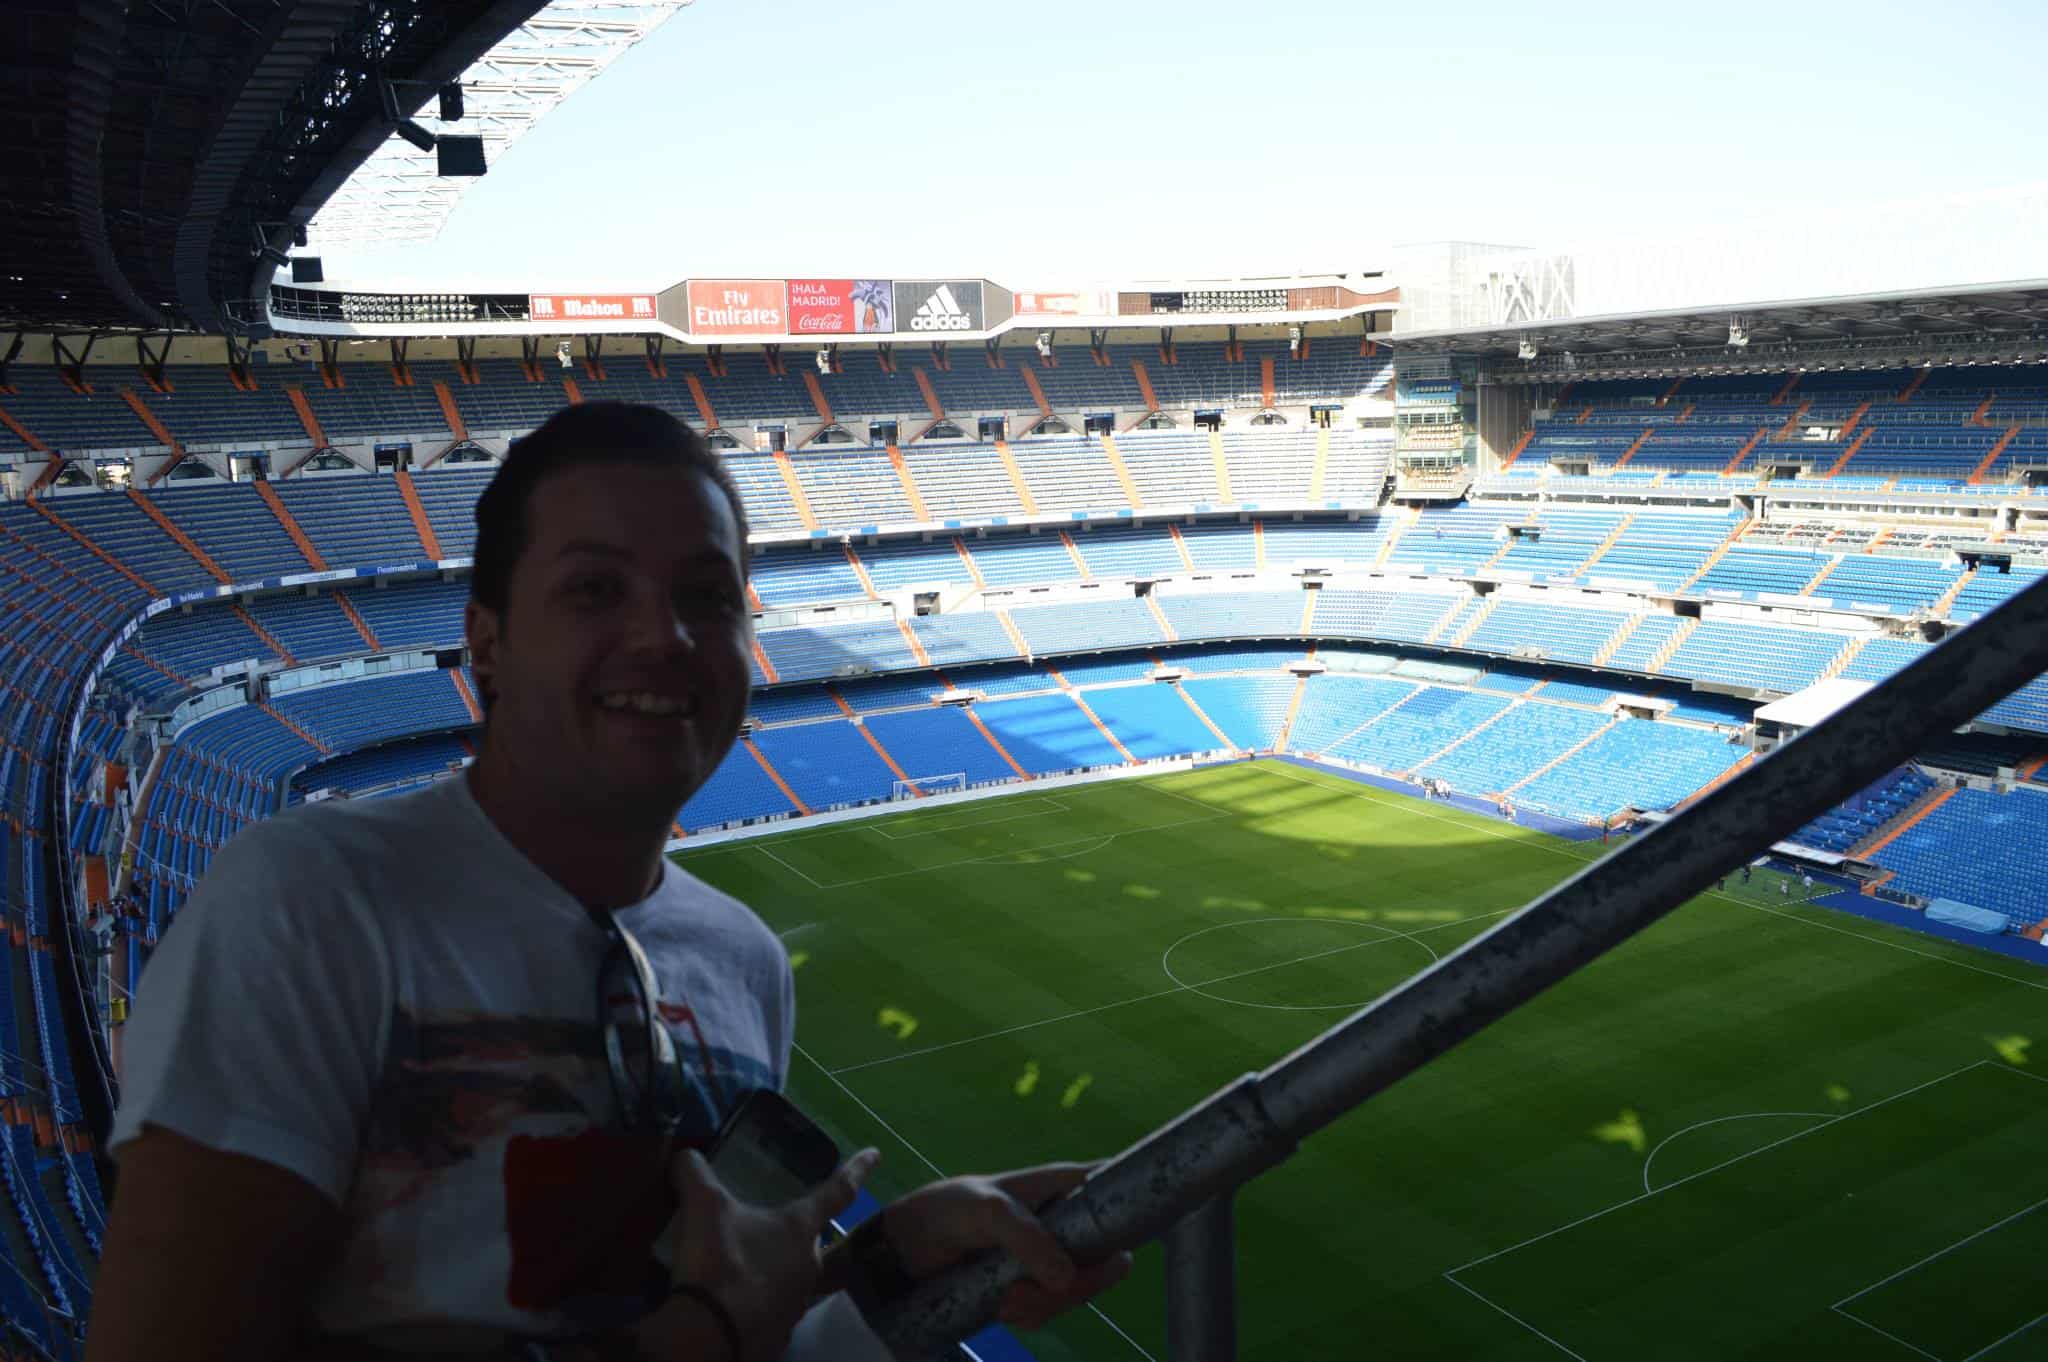 Visita el estadio Bernabéu